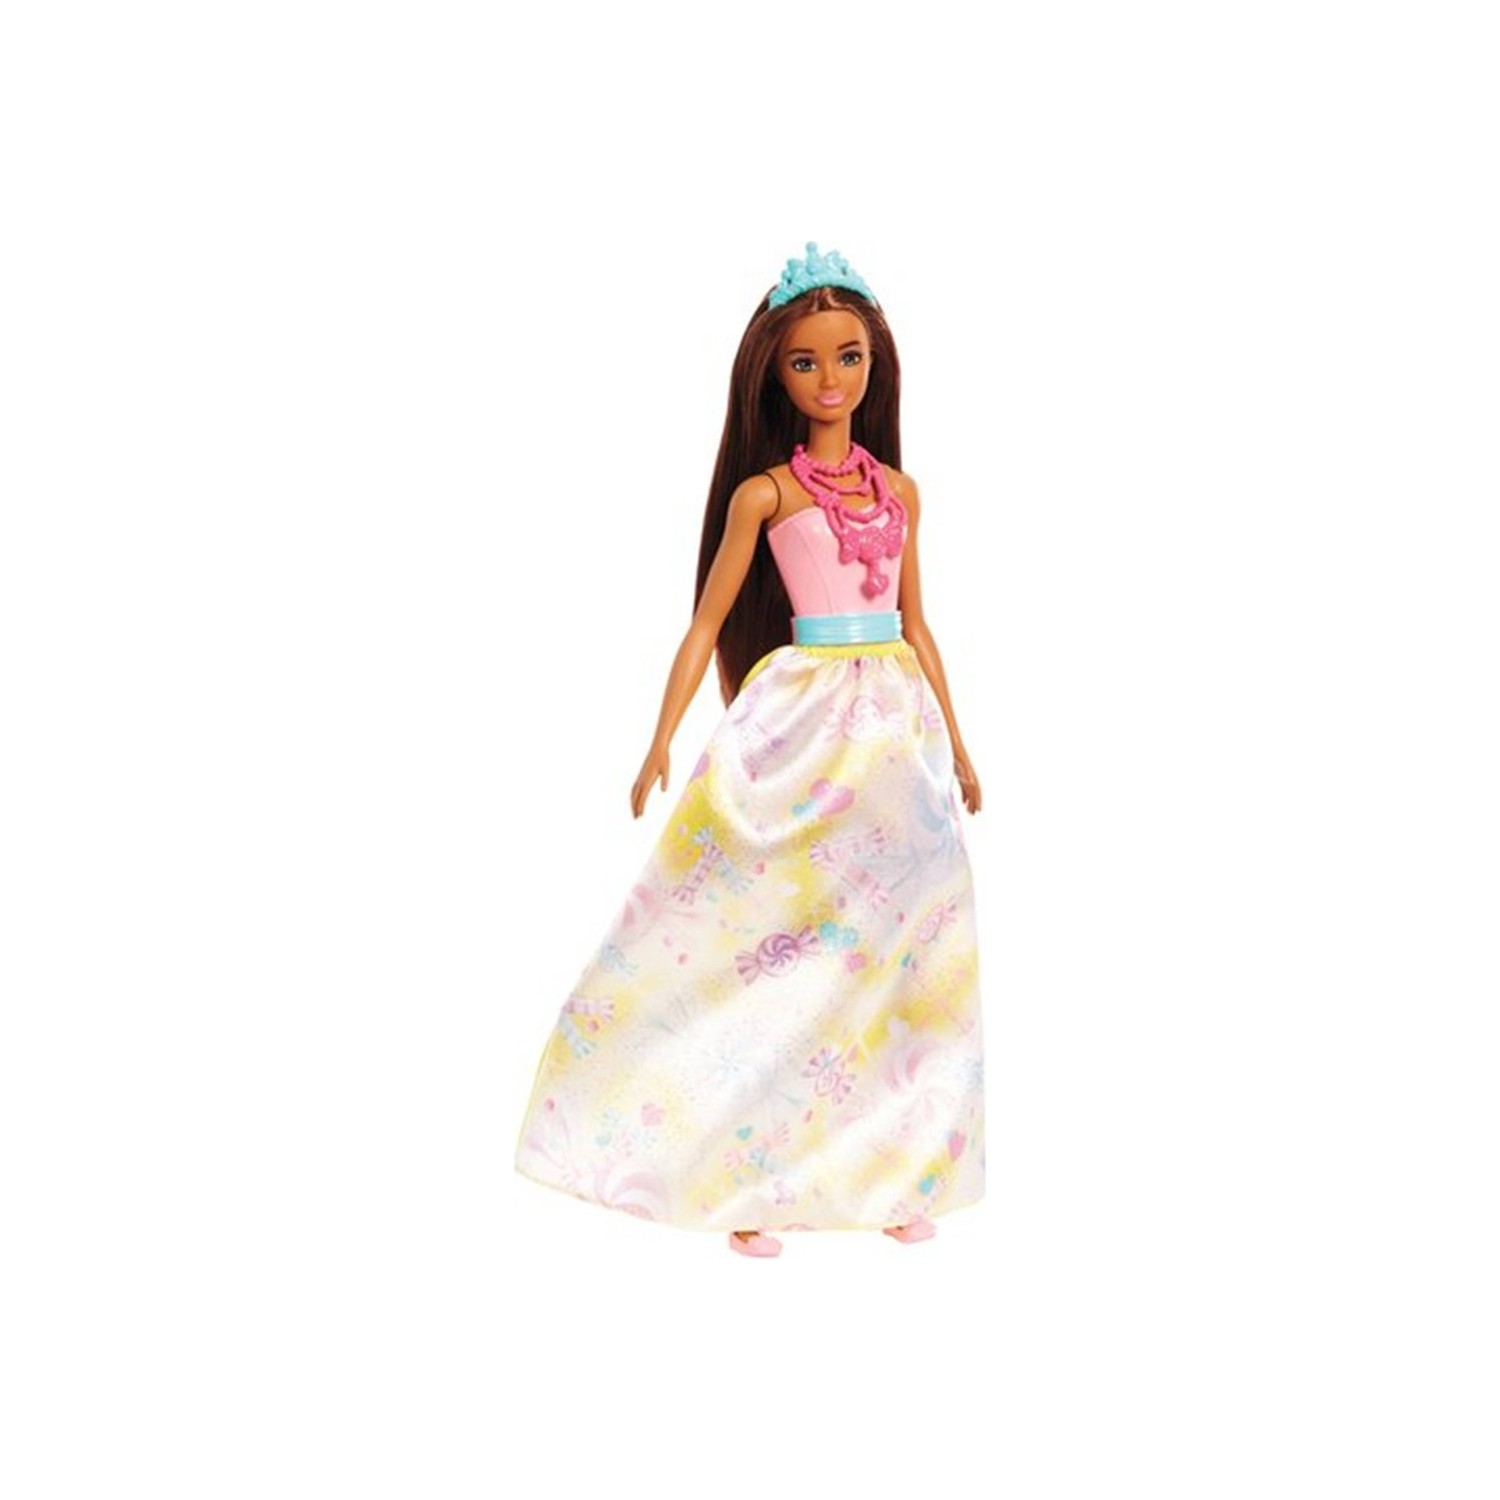 Кукла Barbie Dreamtopia Rainbow Latiin Princess кукла barbie русалка dreamtopia ggc09